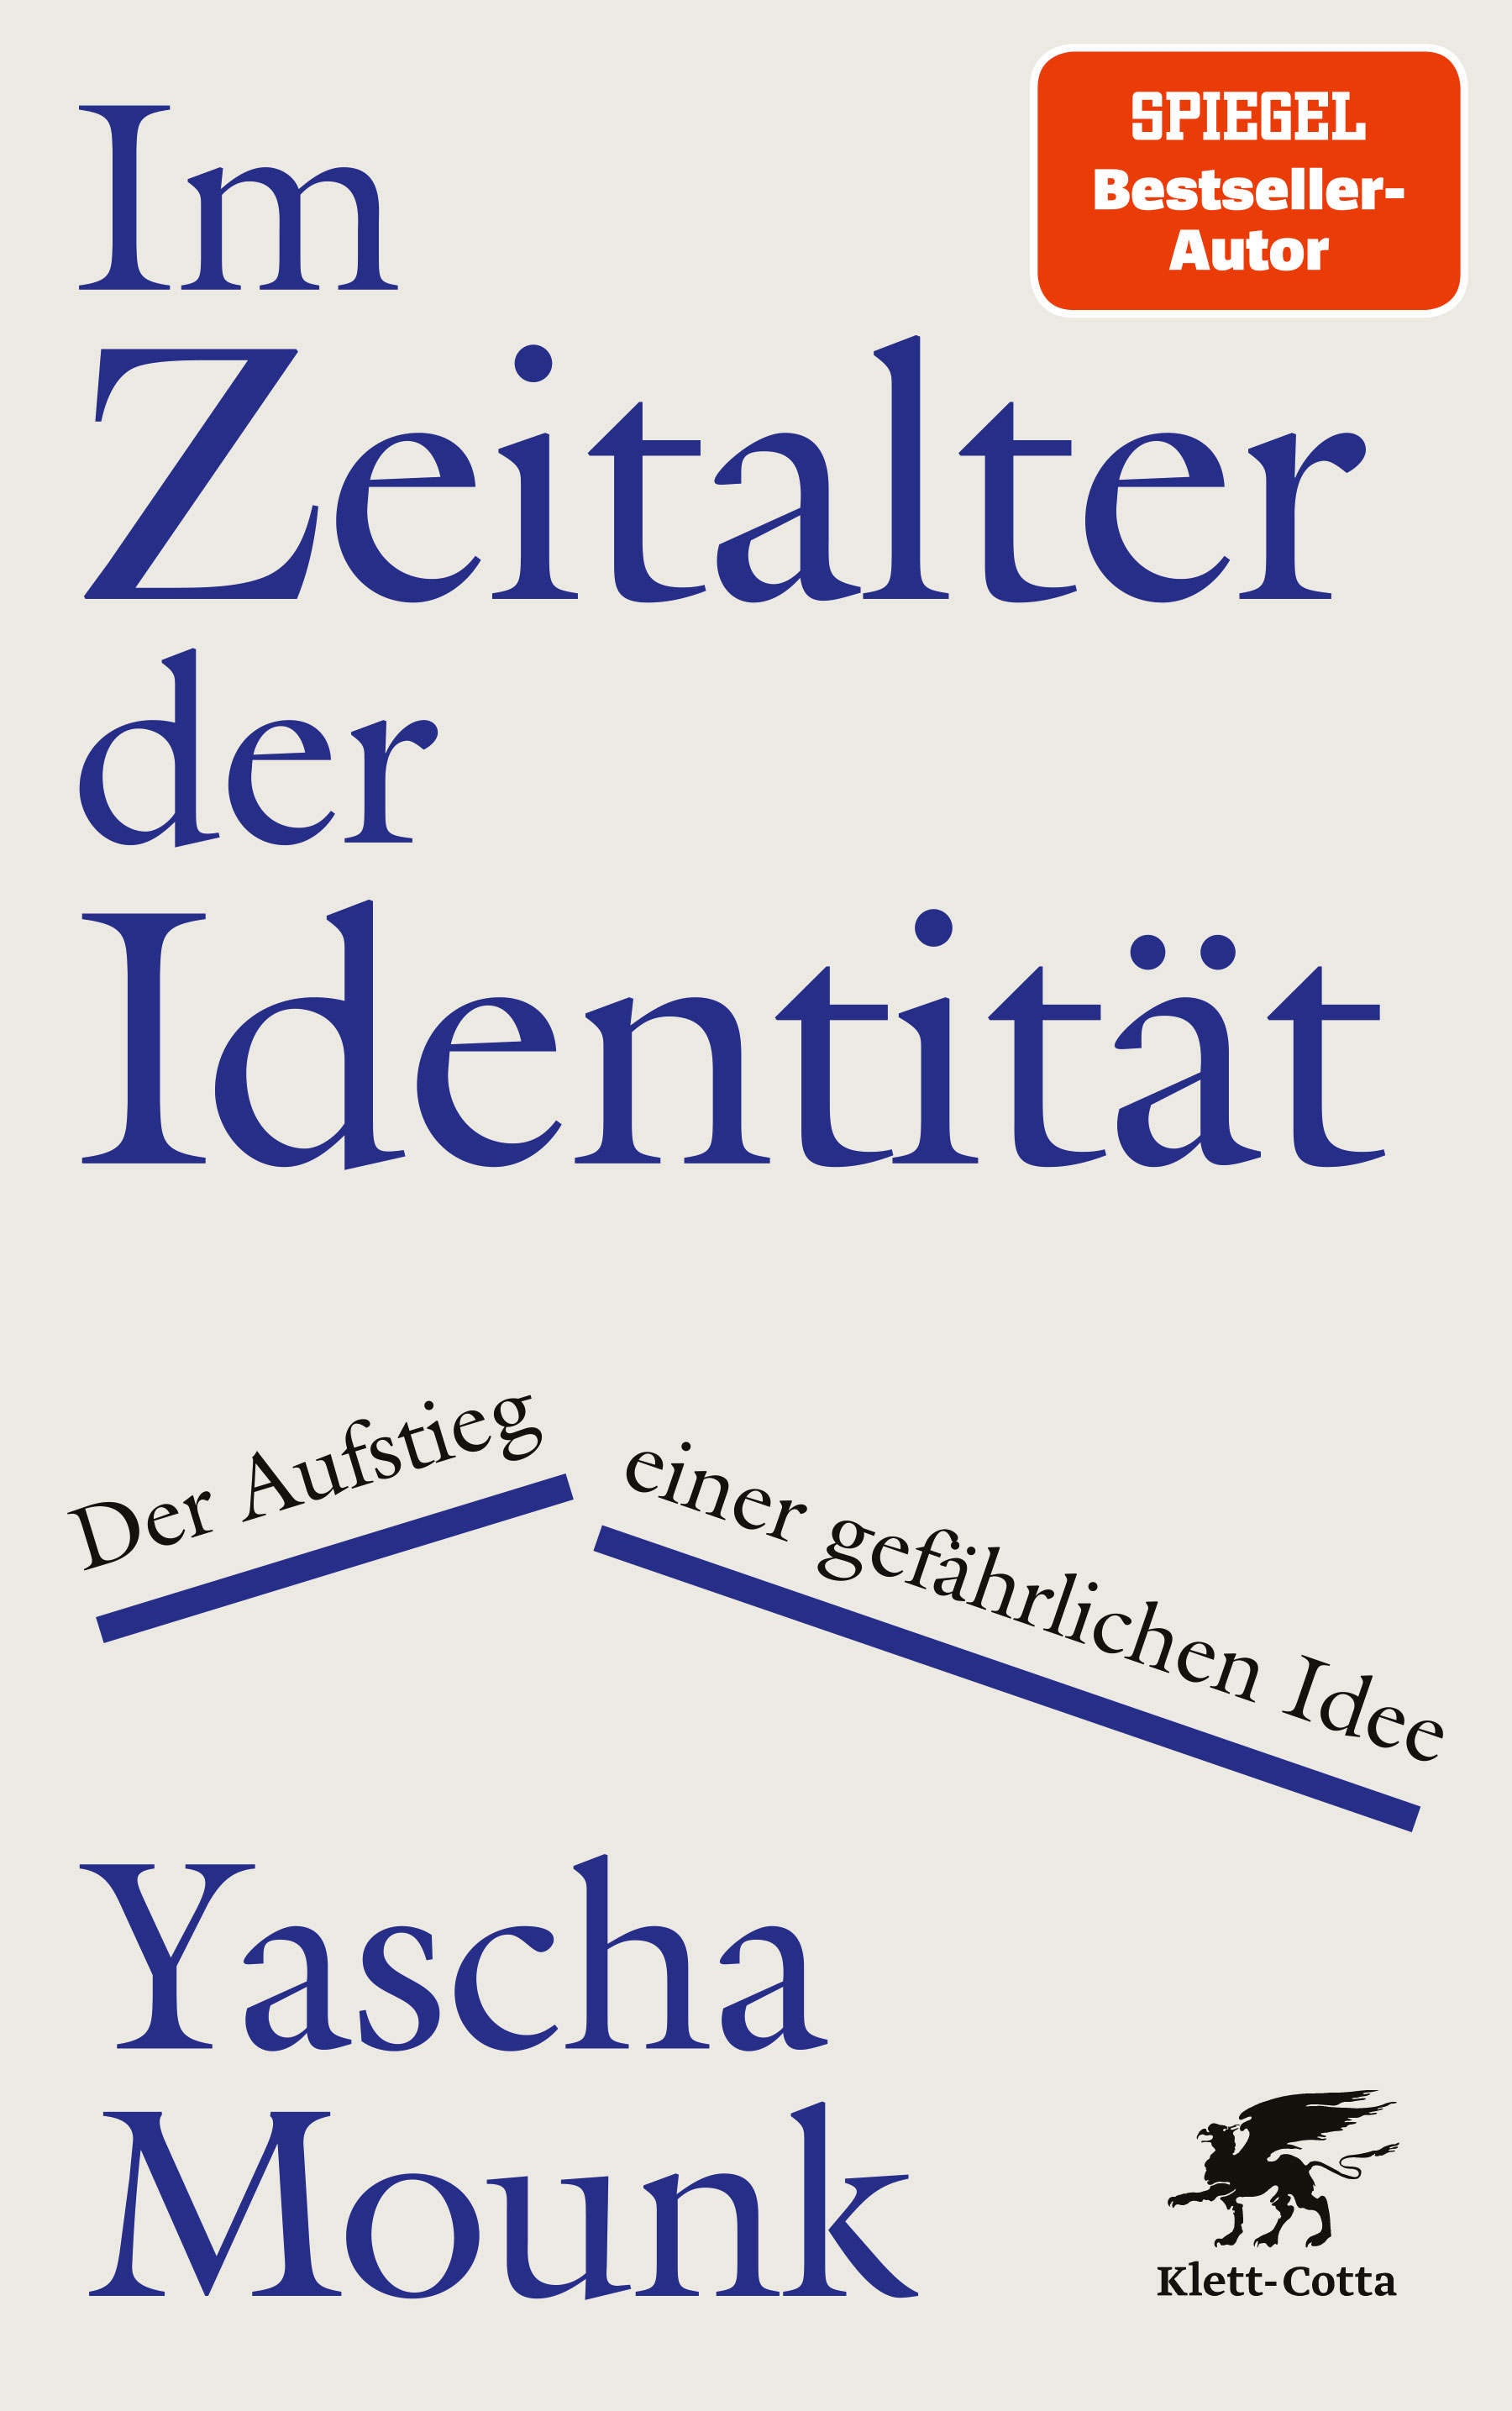 Mounk, Yascha: Im Zeitalter der Identität. Der Aufstieg einer gefährlichen Idee,...